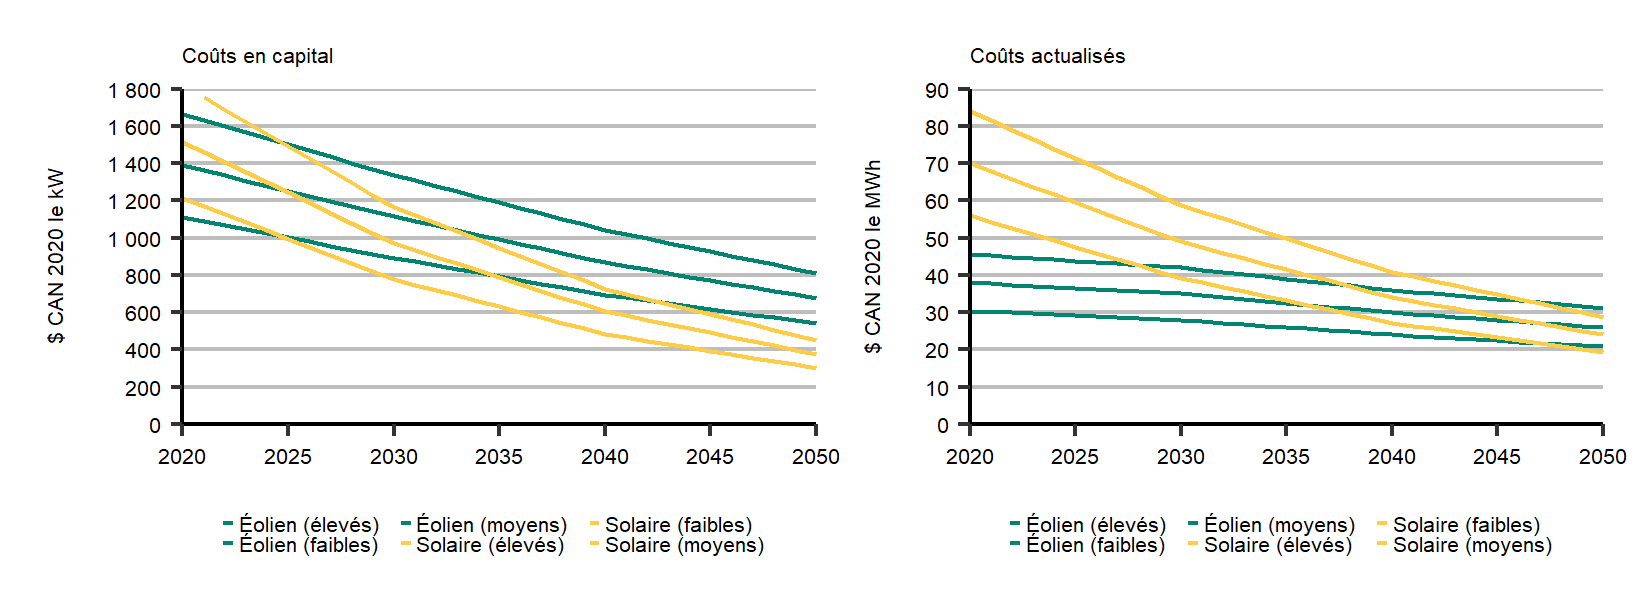 Hypothèses des coûts en capital et des coûts actualisés pour l’éolien et le solaire jusqu’en 2050 – scénario d’évolution des politiques 